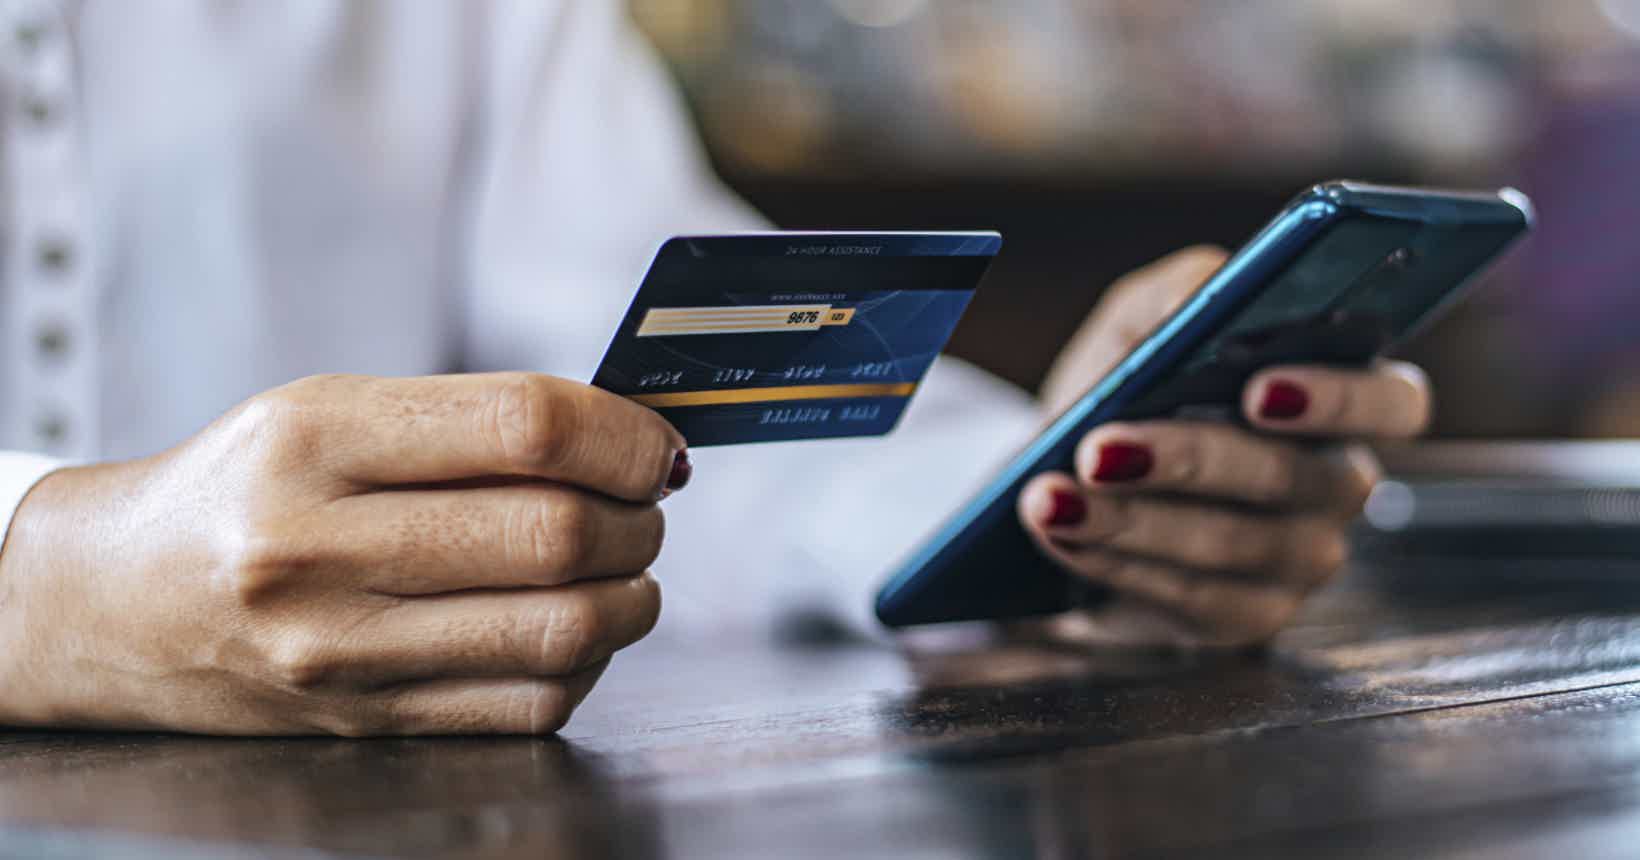 Devo parcelar a fatura do cartão de crédito? (Imagem: melhores destinos)